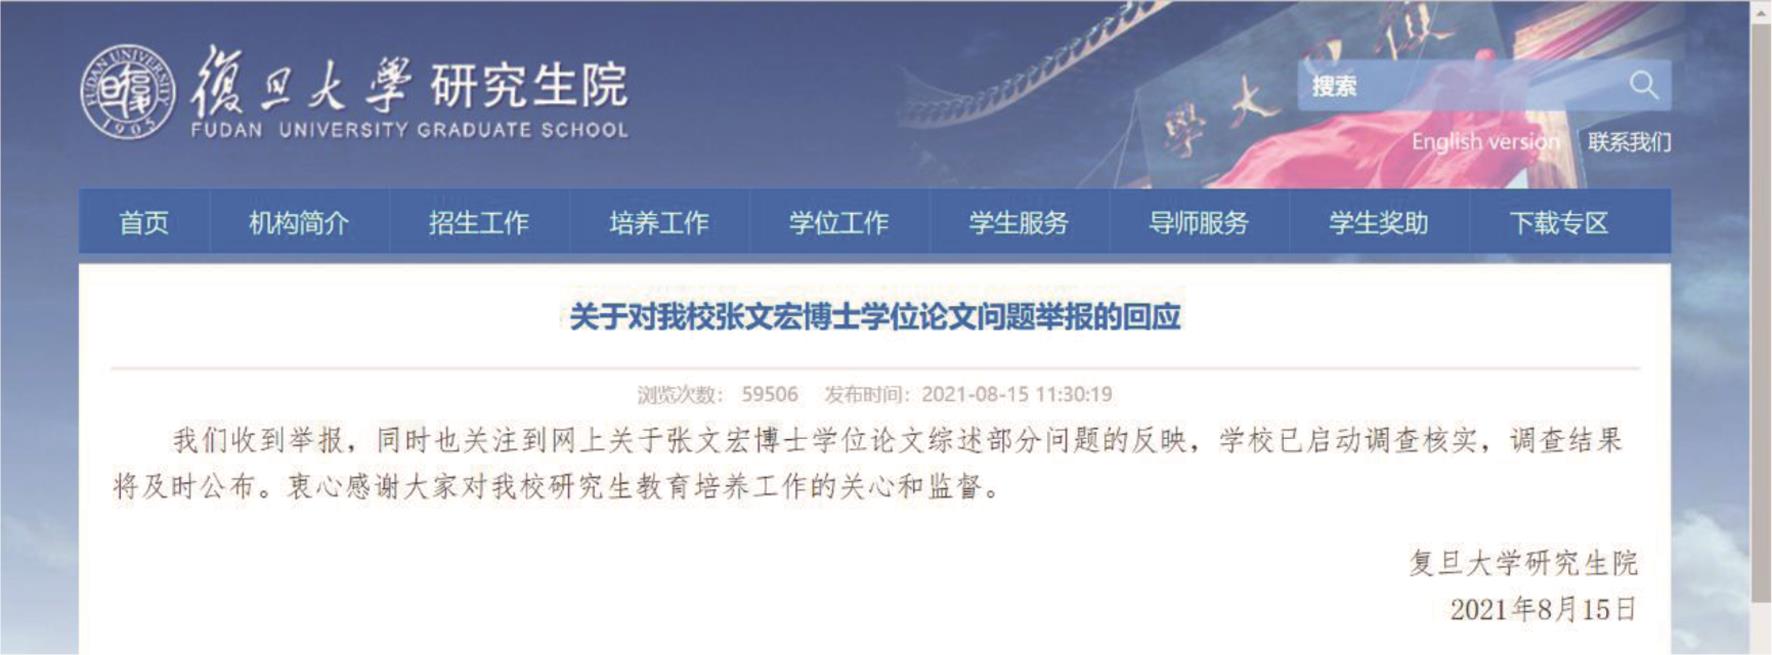 复旦大学对张文宏博士学位论文问题举报的回应 (http://www.gs.fudan.edu.cn/03/98/c12939a394136/page.htm).